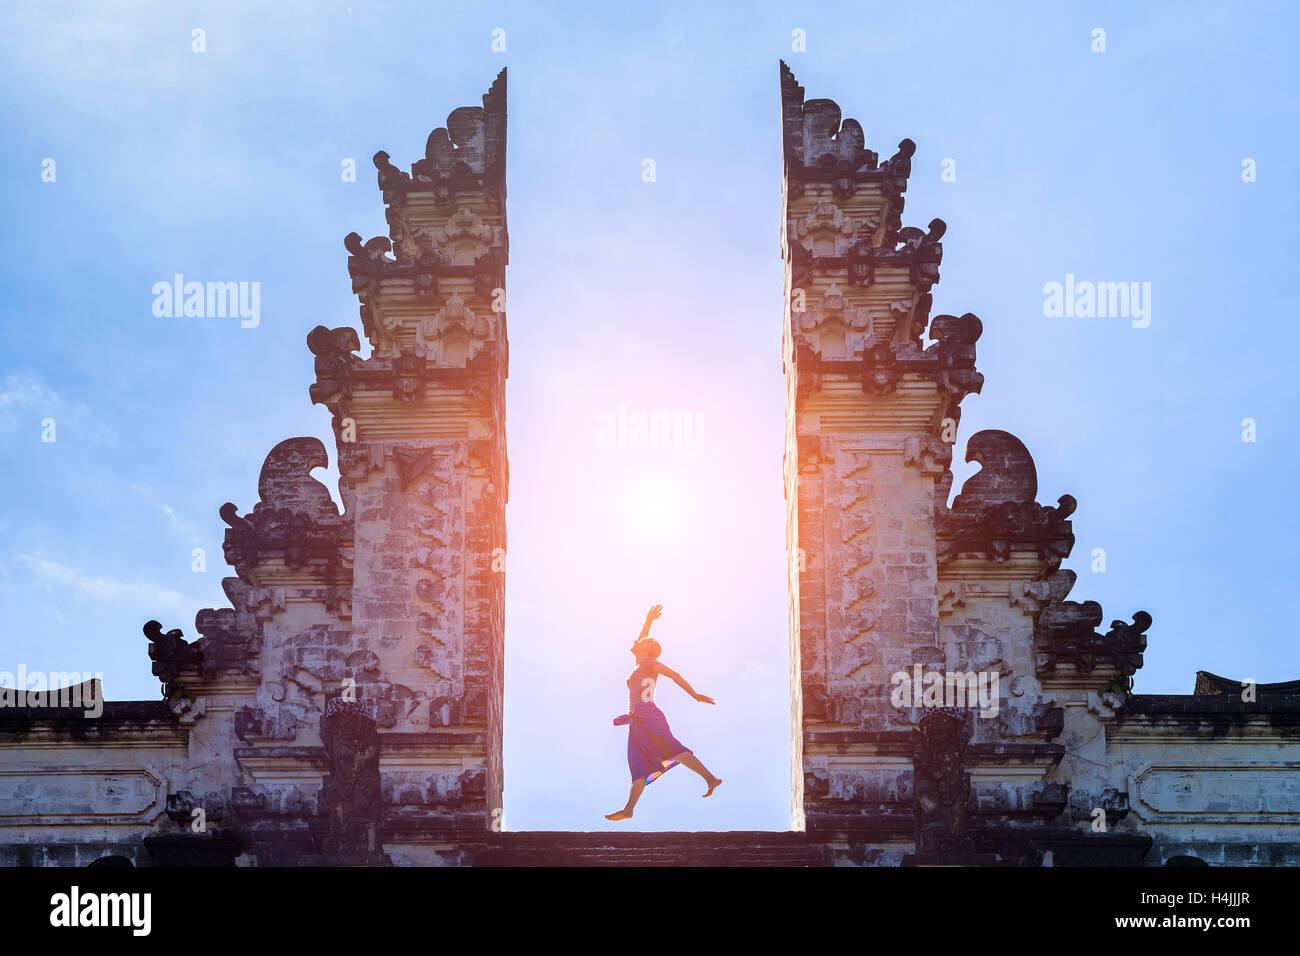 Woman traveler sautant avec énergie et vitalité dans la porte d'un temple, Bali, Indonésie Banque D'Images